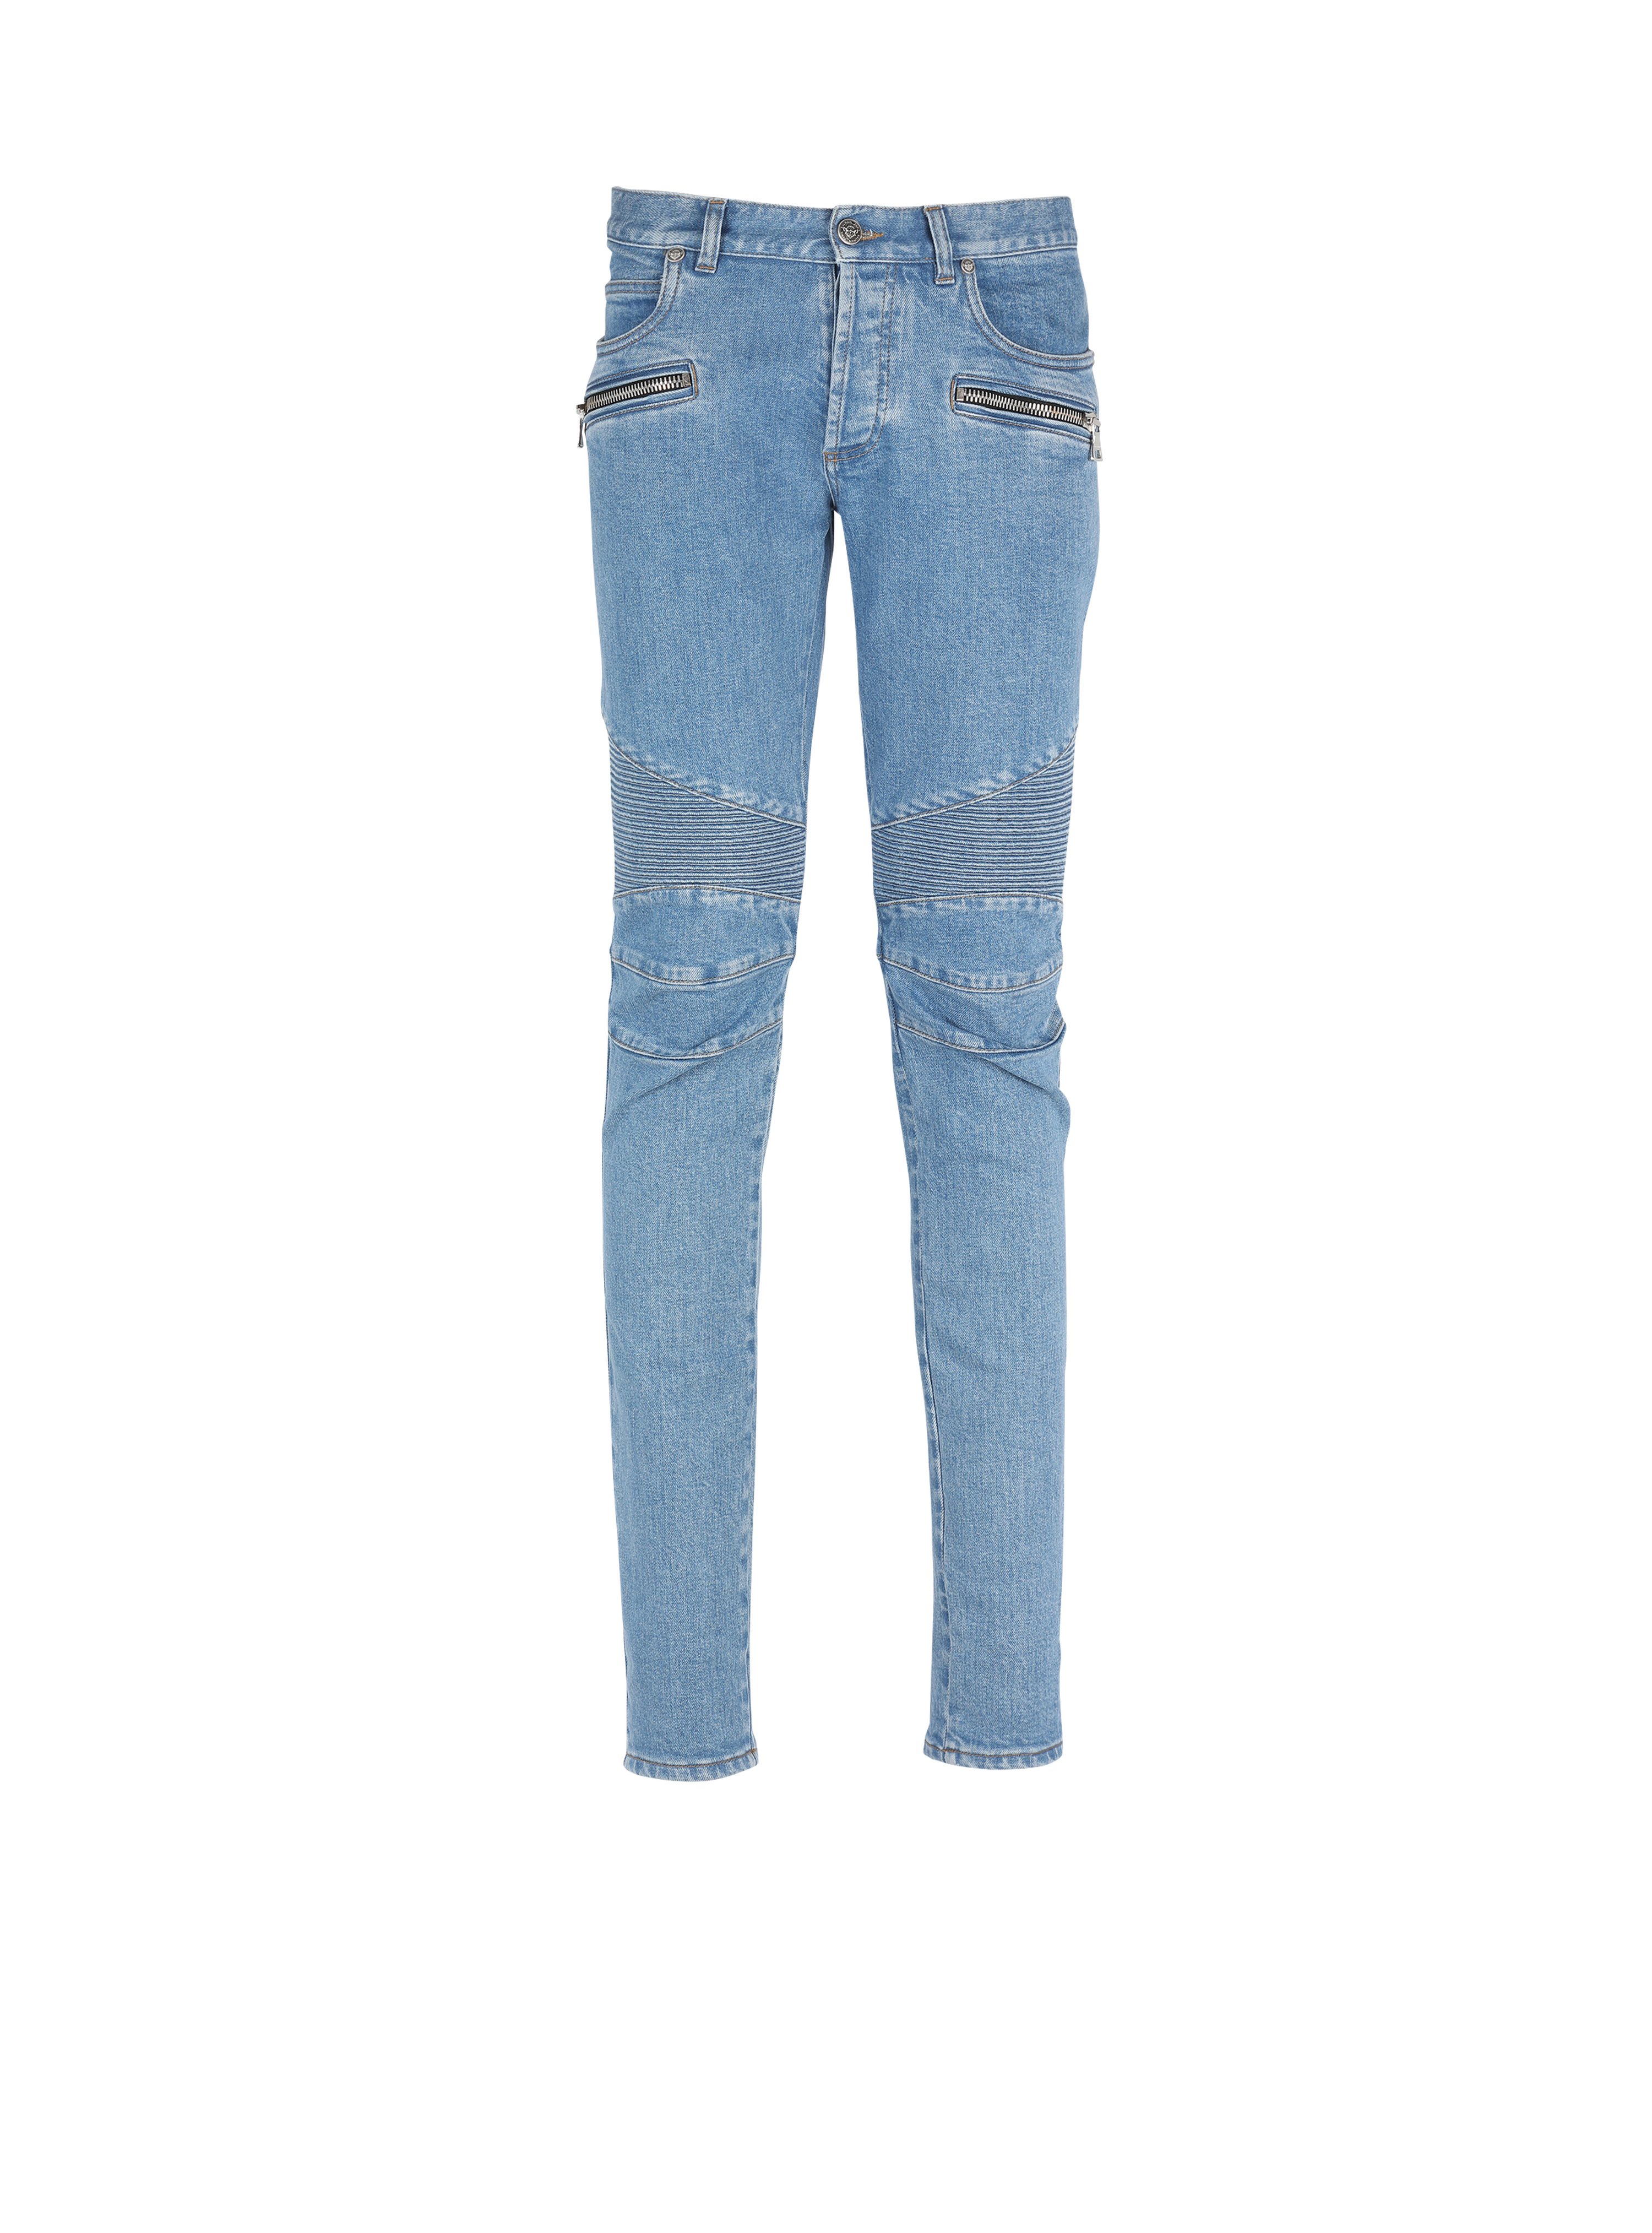 Jeans slim in cotone con inserti a coste e monogramma Balmain sull’orlo, blu